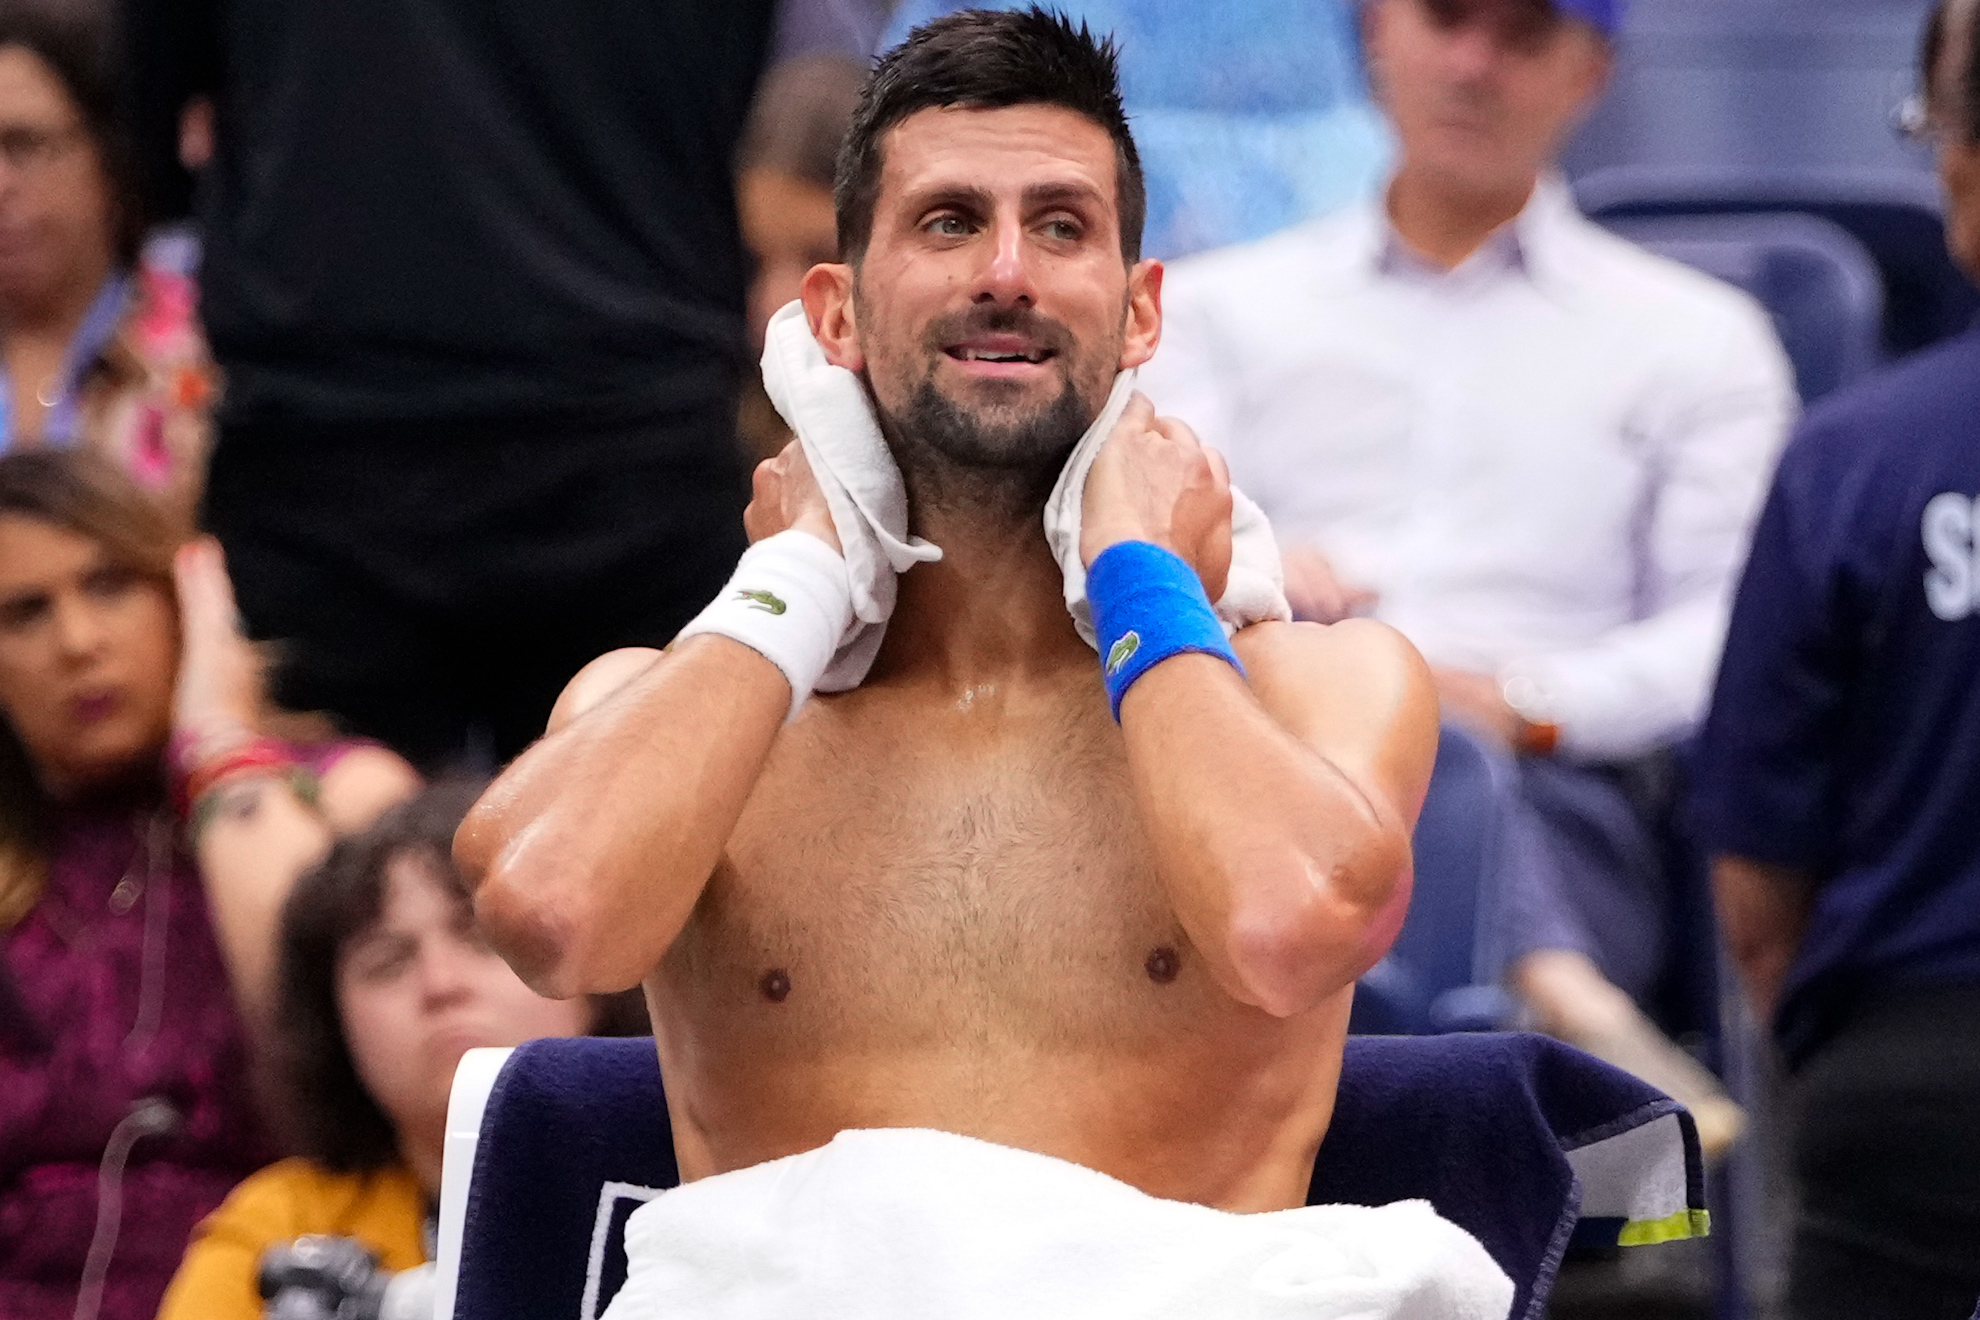 Novak Djokovic goofs around at Paris Masters